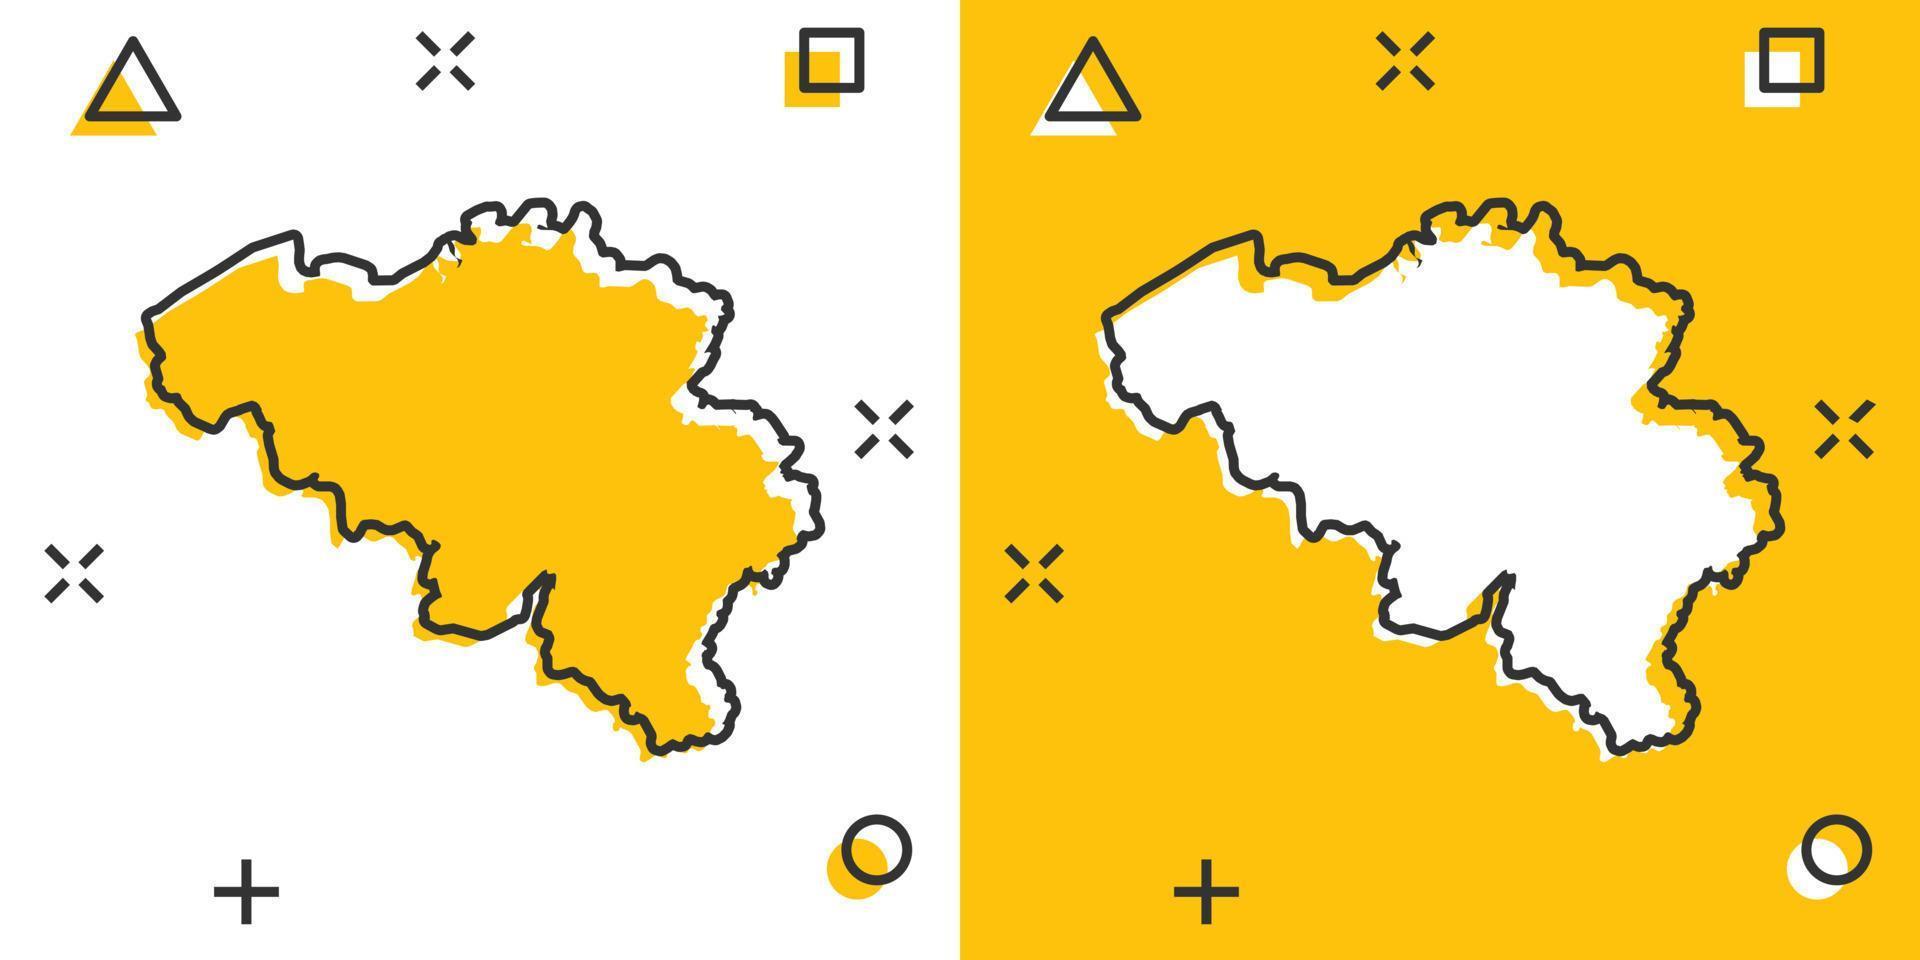 Vektor Cartoon Belgien Kartensymbol im Comic-Stil. Belgien Zeichen Abbildung Piktogramm. Kartografie-Karten-Business-Splash-Effekt-Konzept.